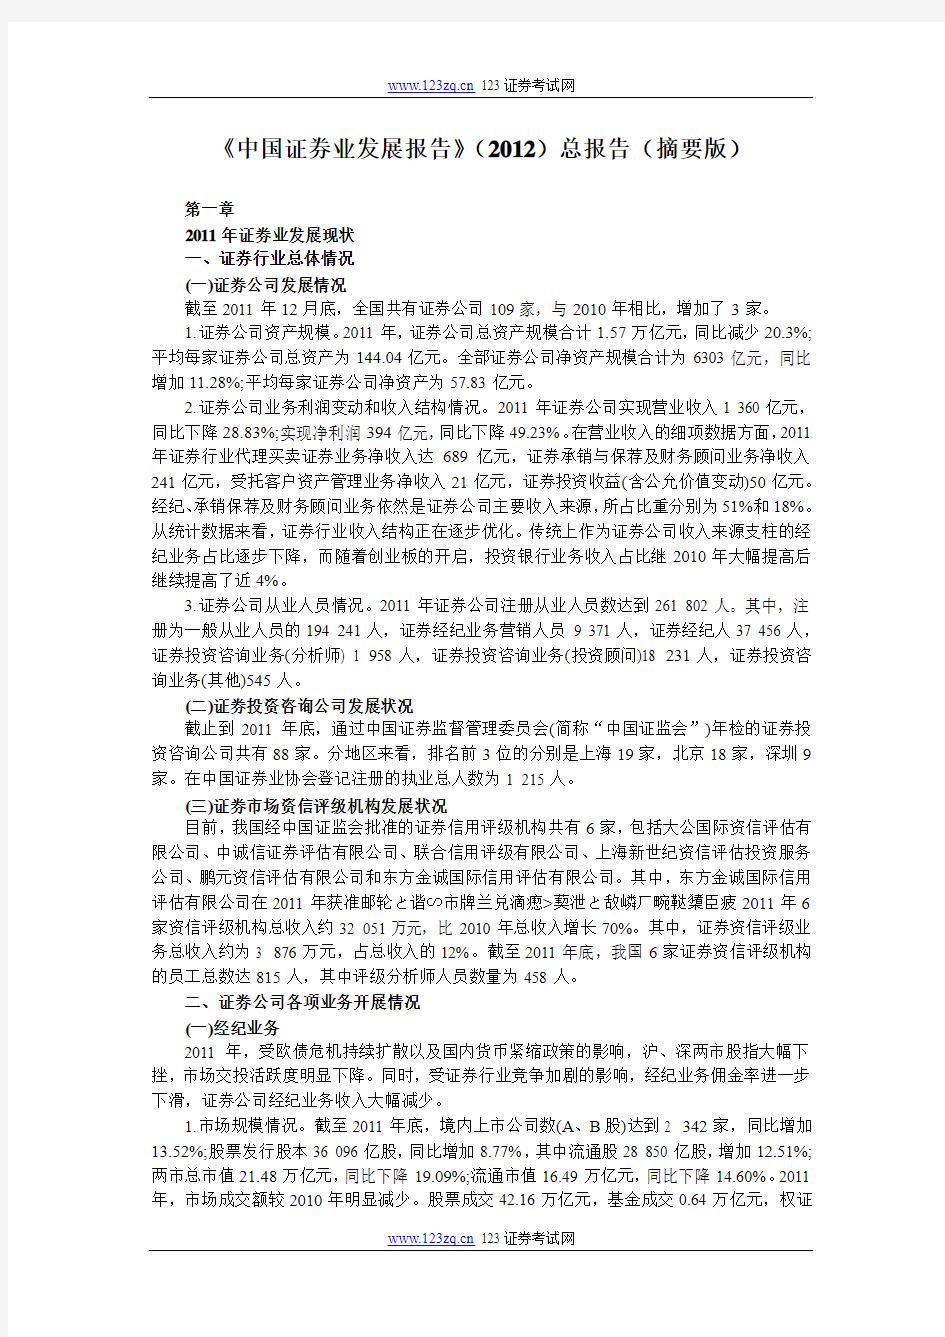 证券从业资格考试《中国证券业发展报告》(2012)总报告(摘要版)